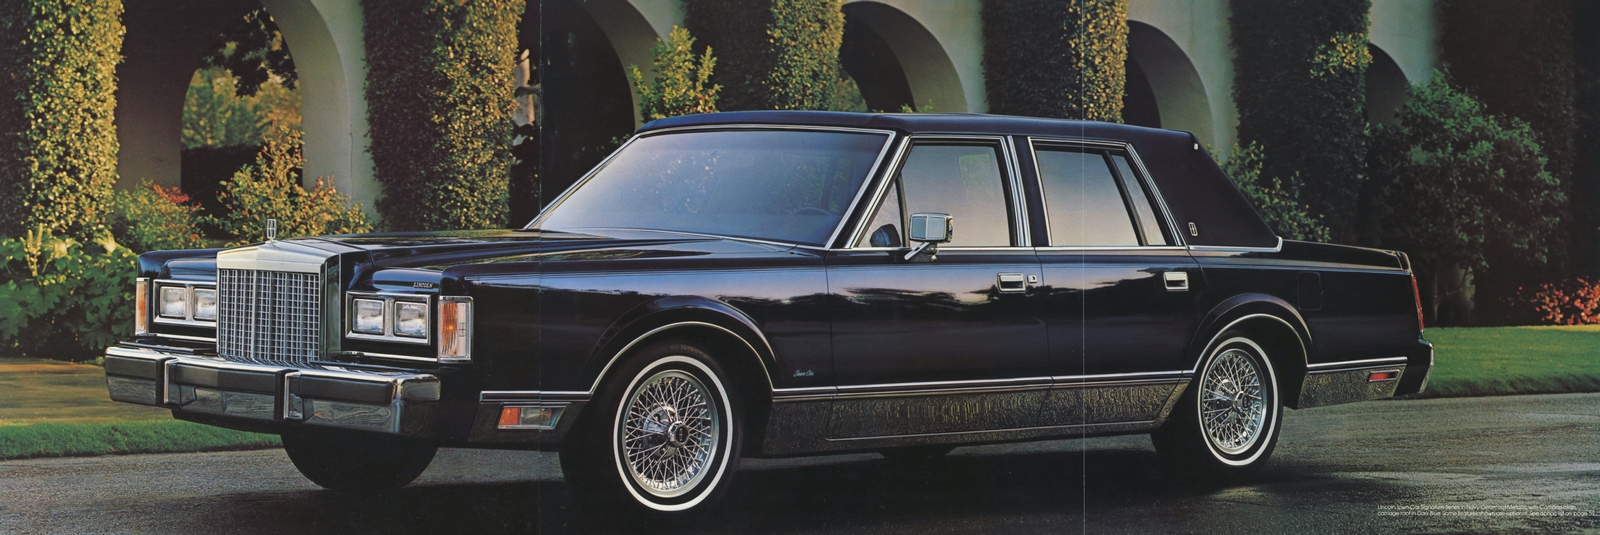 n_1985 Lincoln Full Line Prestige-41-42-43.jpg